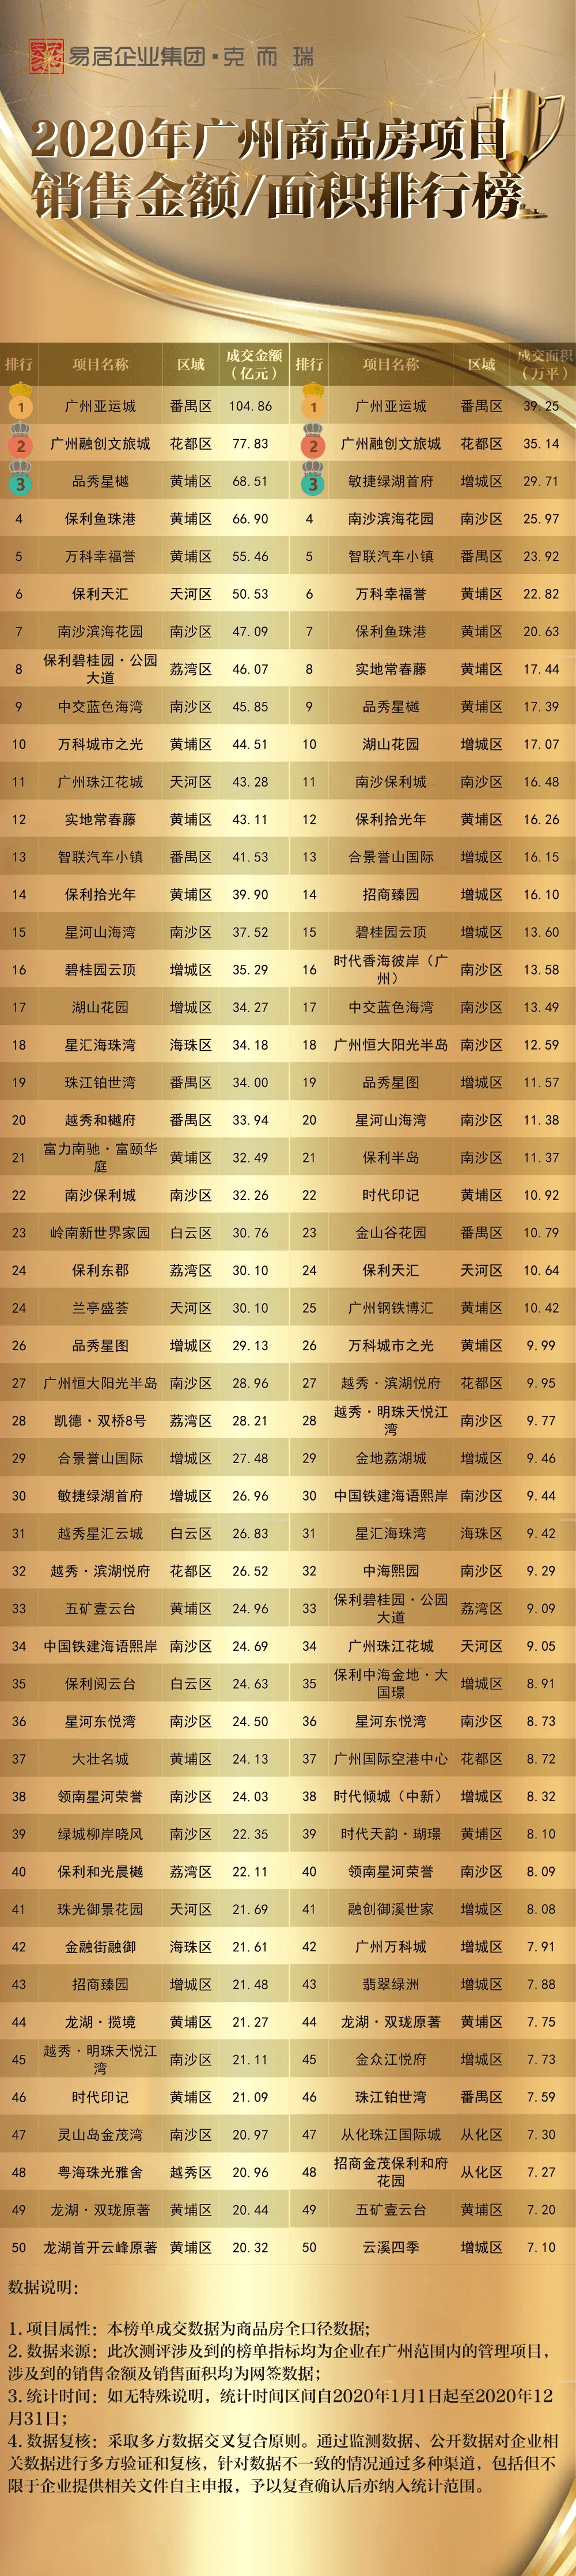 
重磅公布!2020年广州、佛山商品房项目销售排行榜!|豪运